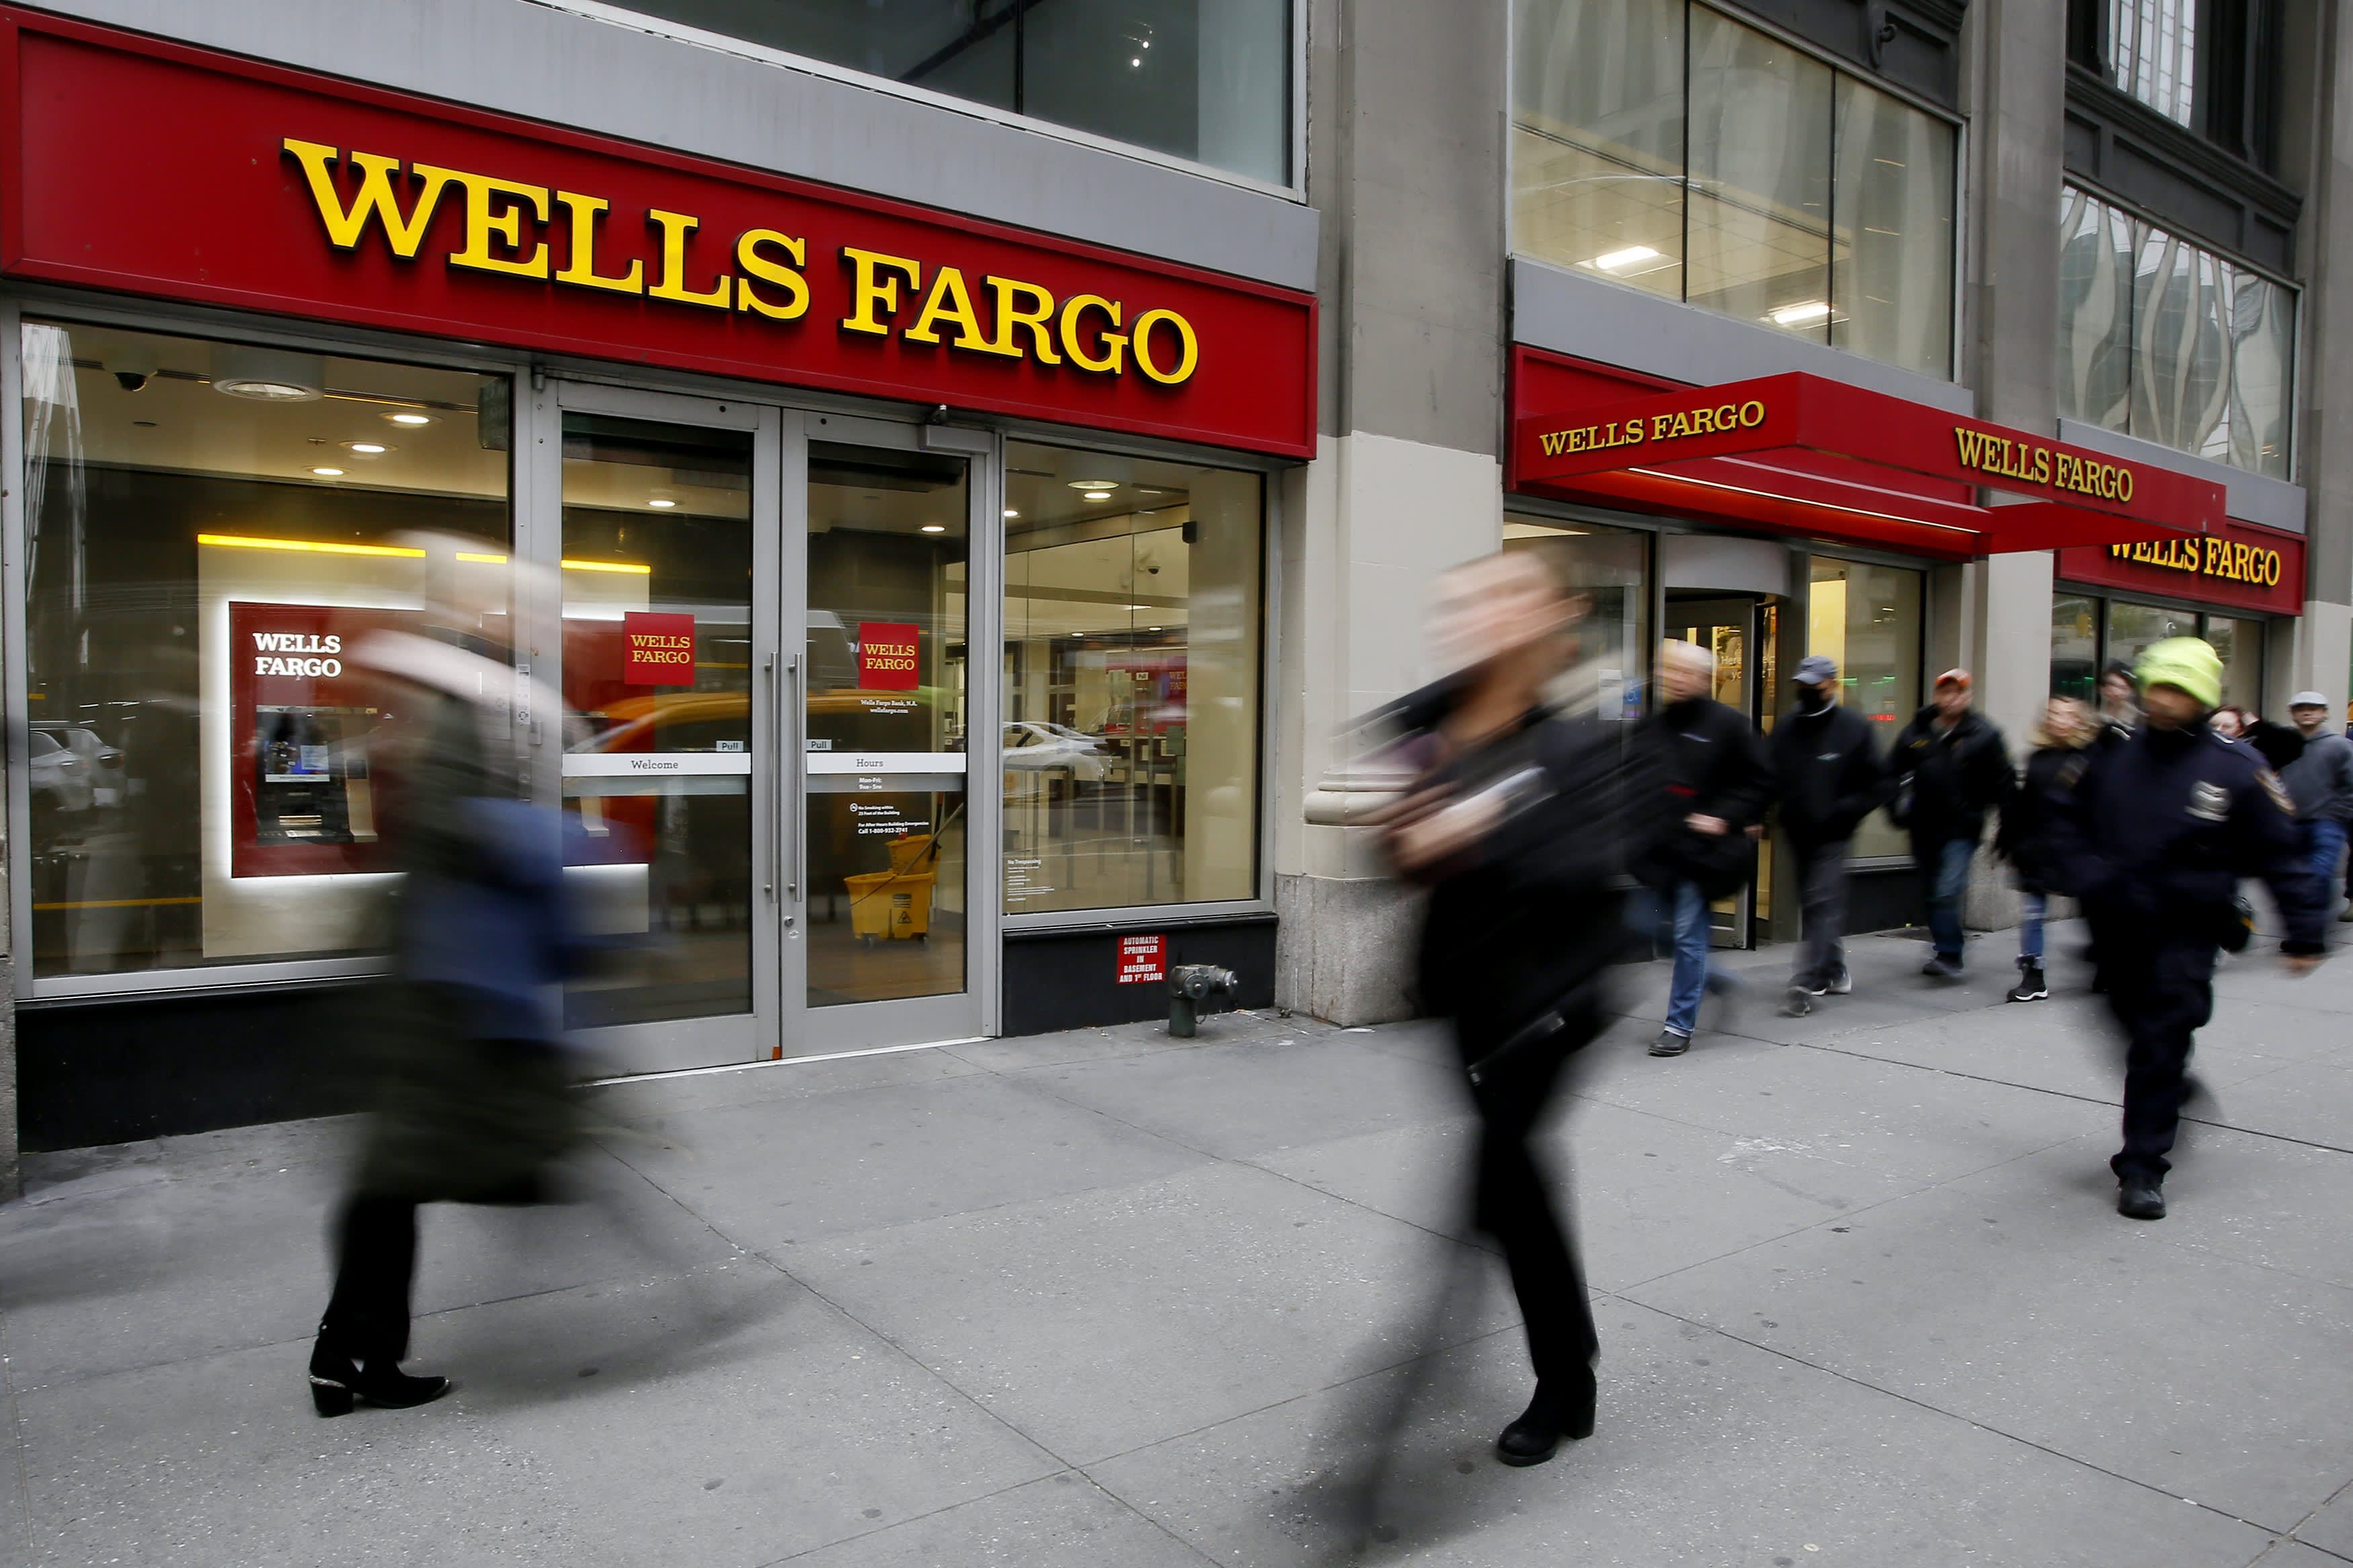 De hypotheekverstrekker van Wells Fargo werd onderzocht wegens rassendiscriminatie